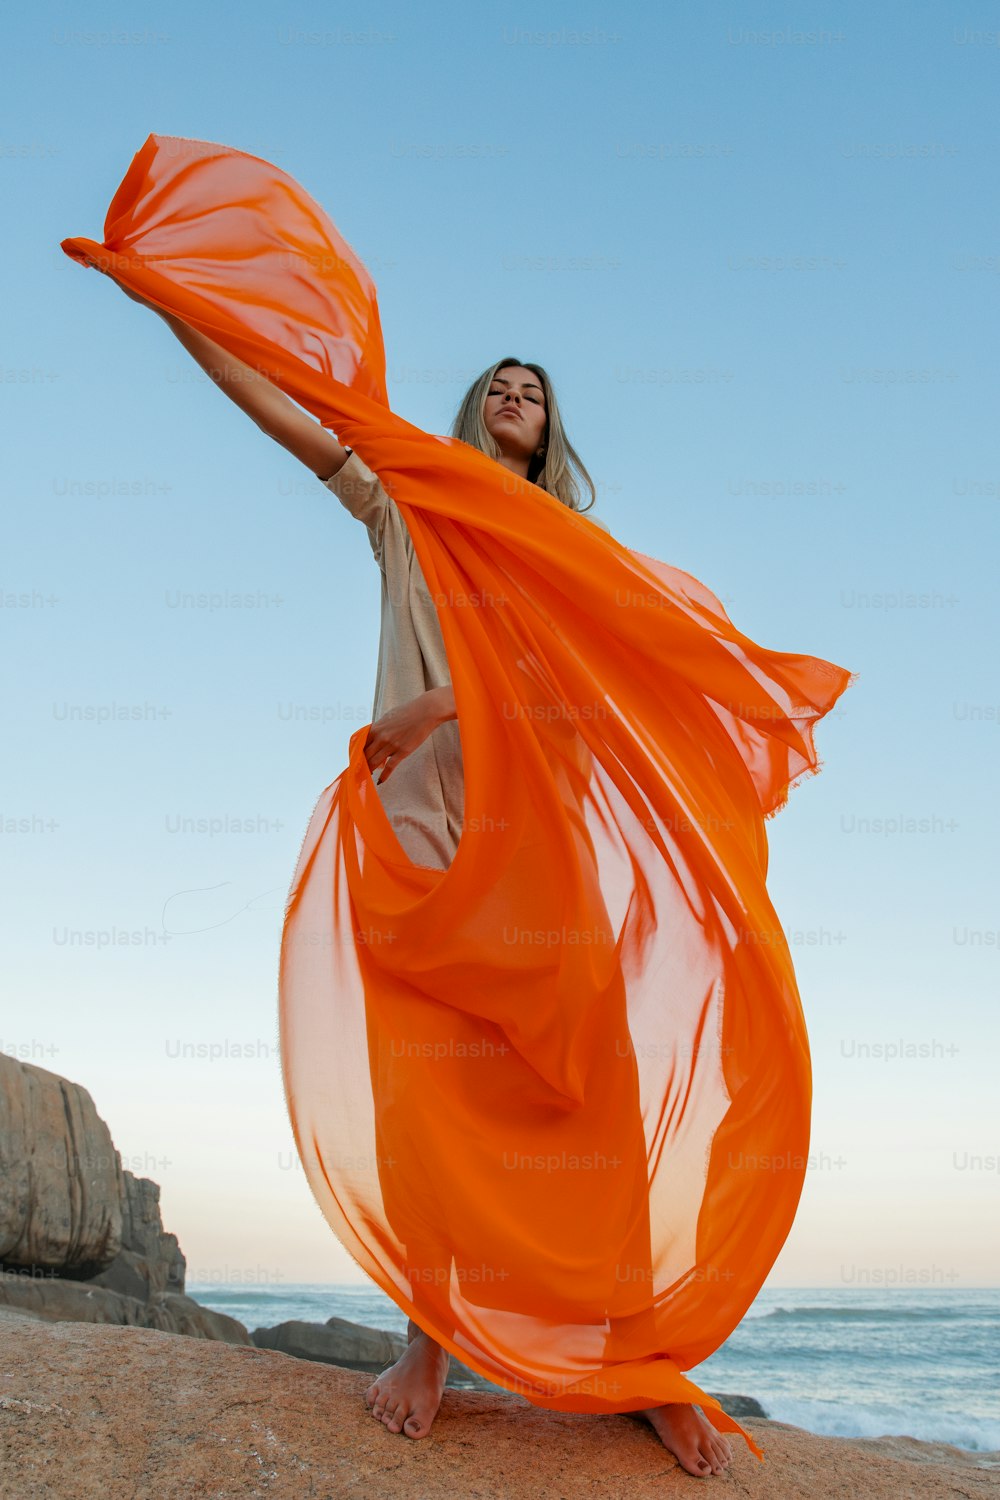 해변에 서 있는 주황색 드레스를 입은 여자